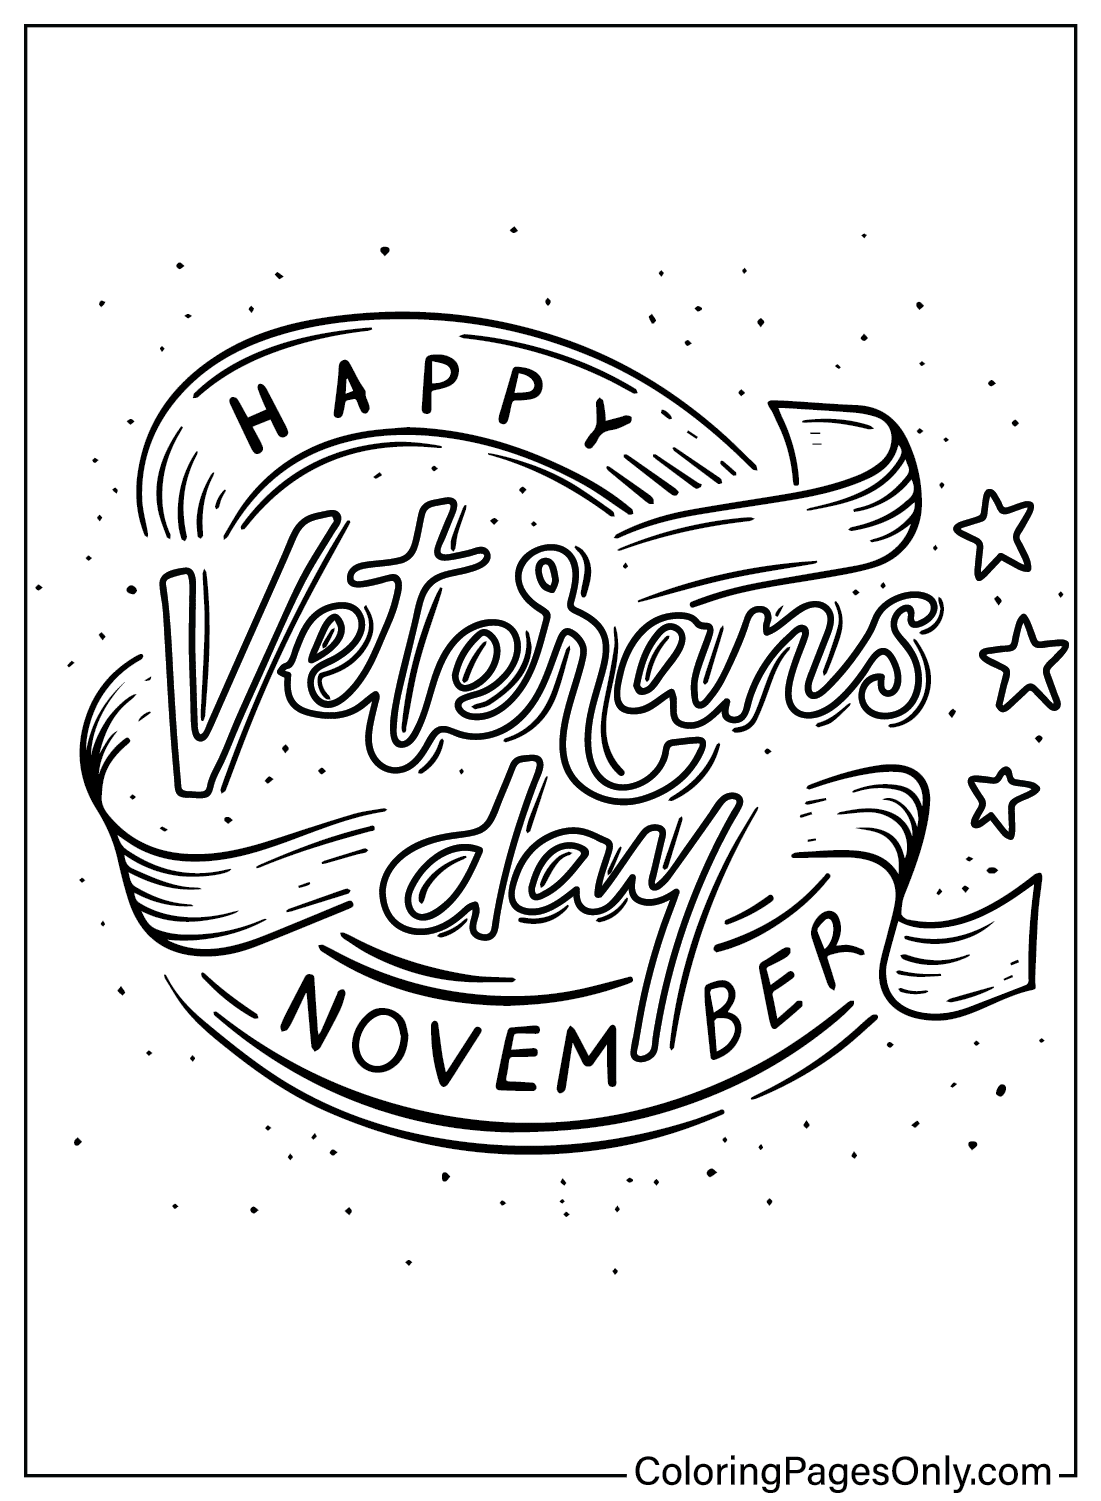 Malvorlage Veterans Day vom Veterans Day